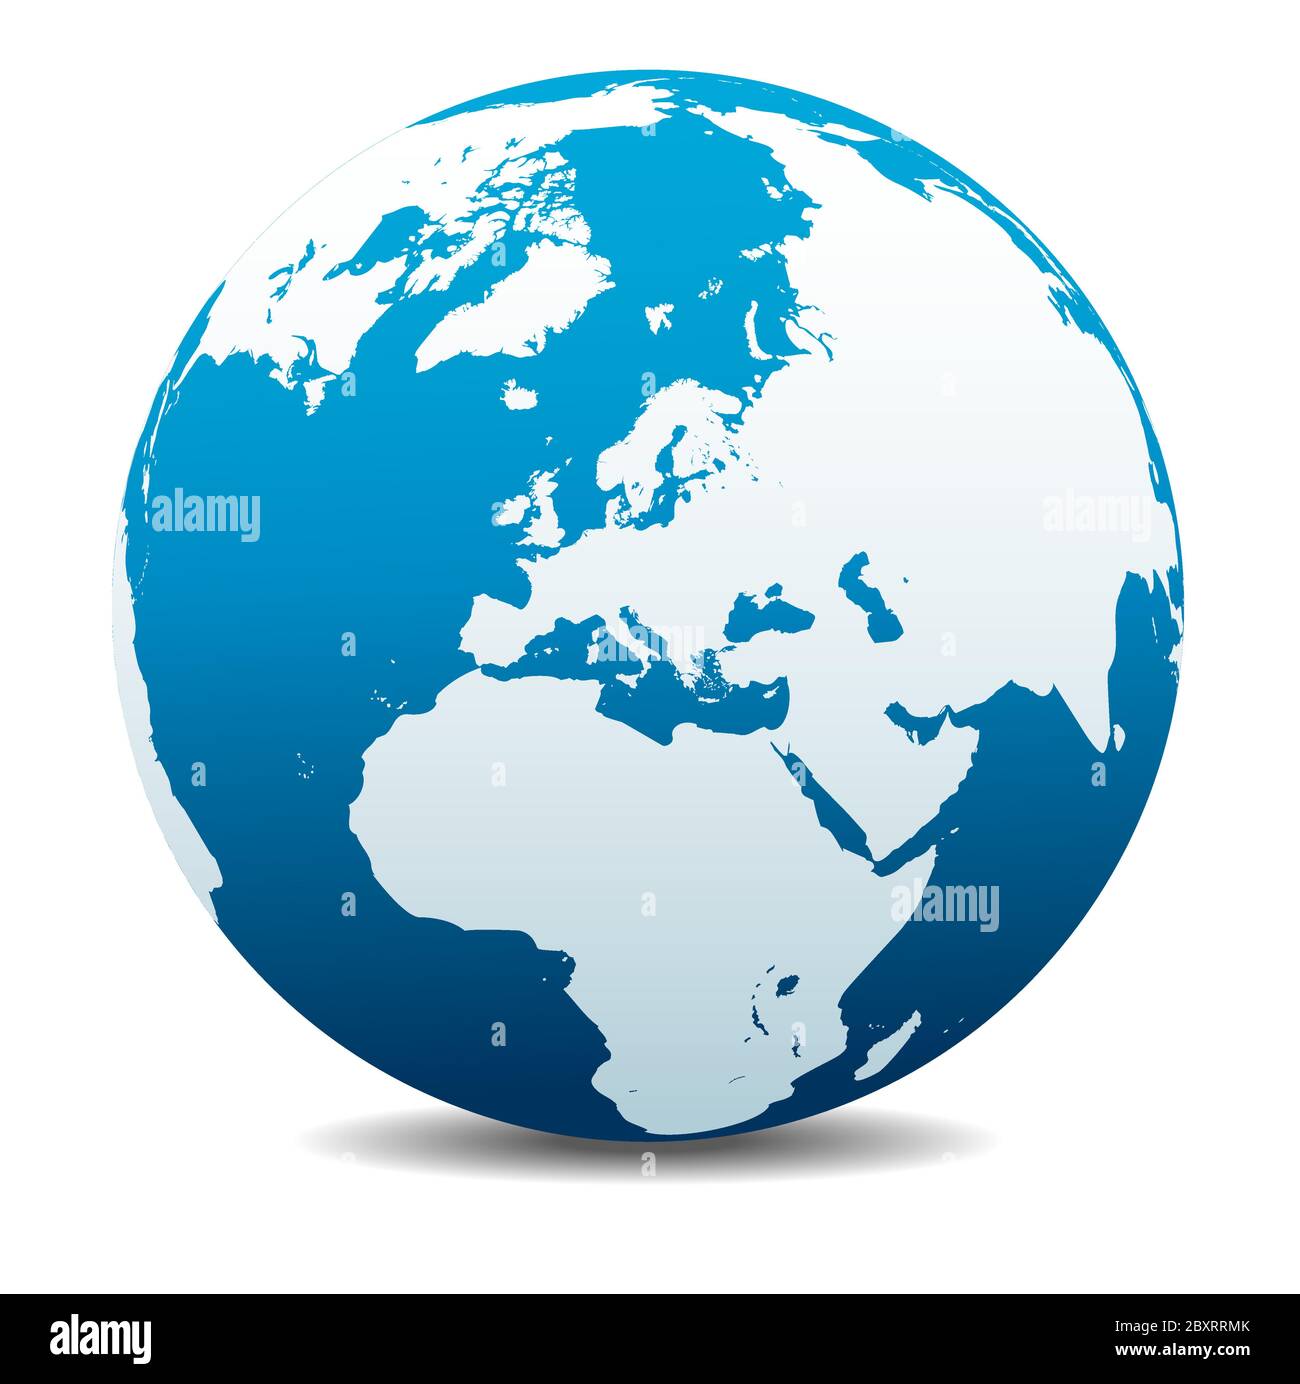 Nordpol Europa Top of the World. Vektorkarte Symbol des Globus, Erde. Alle Elemente befinden sich auf einzelnen Ebenen in der Vektordatei. Stock Vektor